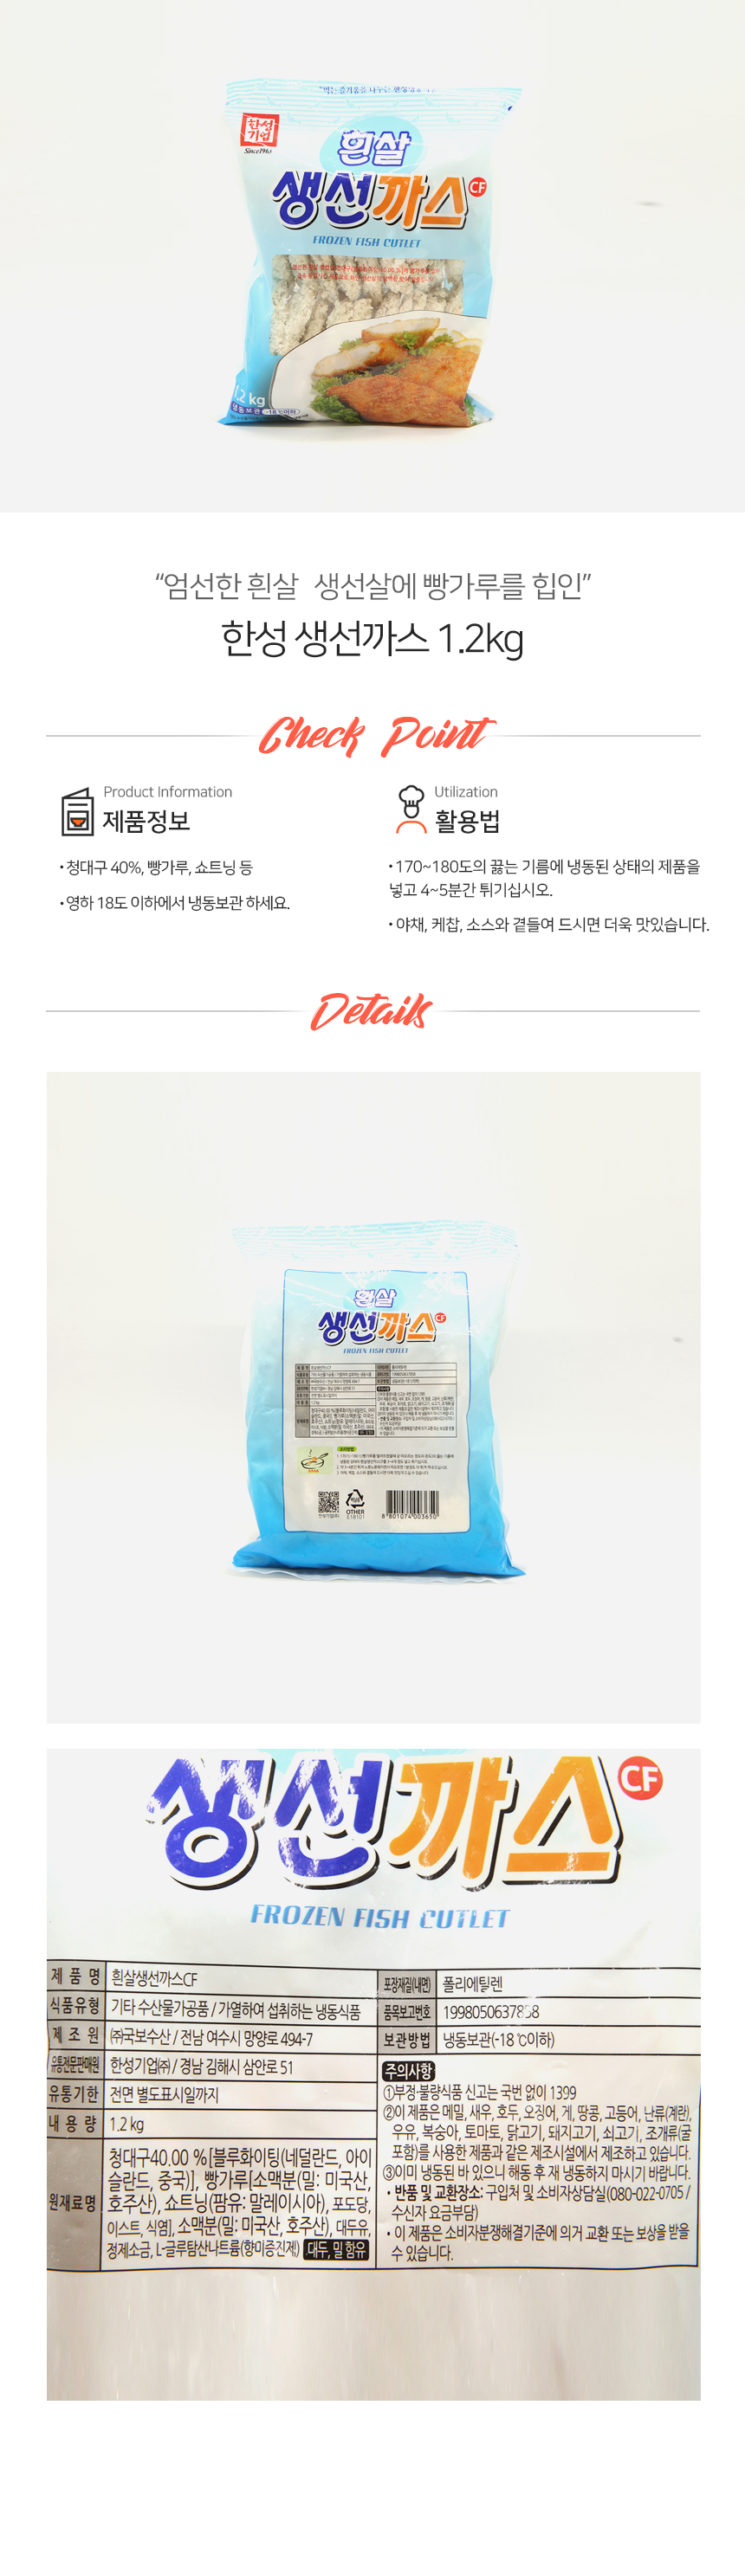 韓國食品-[Hansung] Fried Fish Nugget 1.2kg